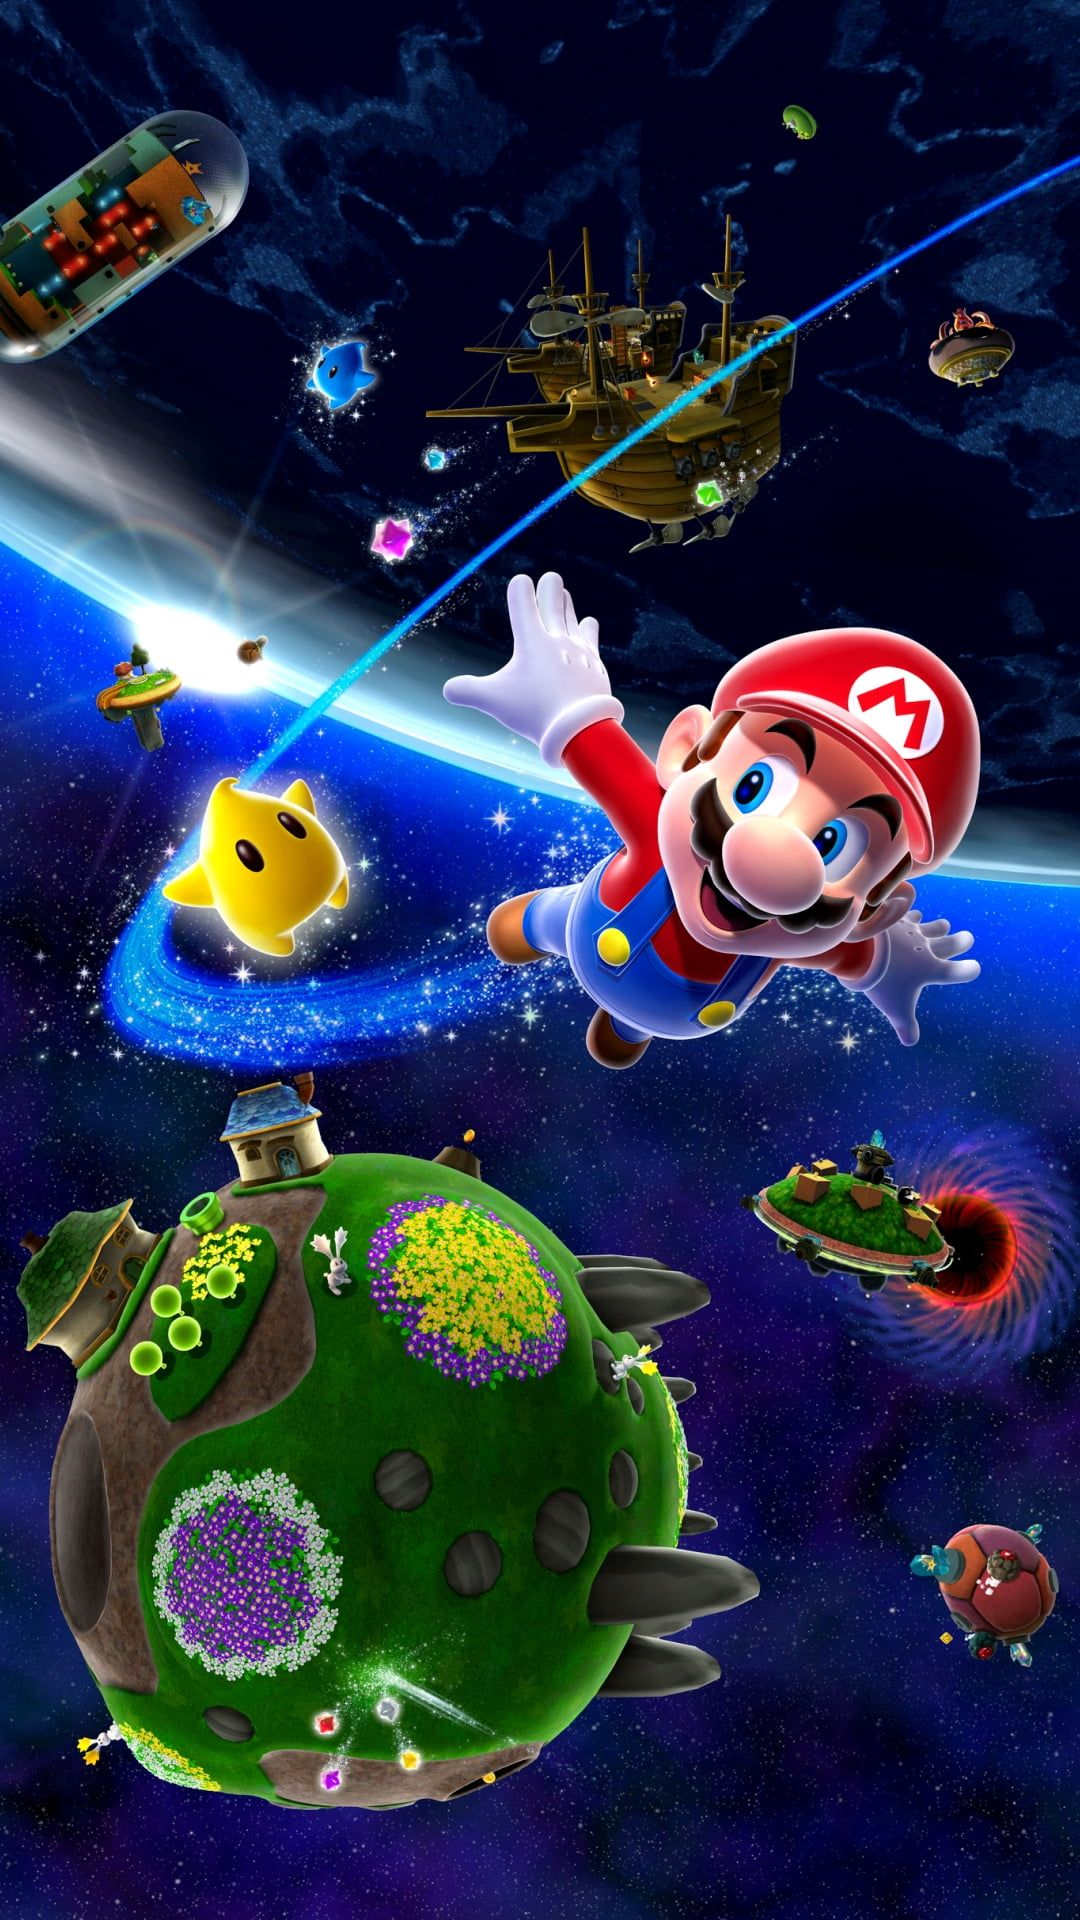 1080x1920 Super Mario Galaxy, Super Mario digital wallpaper #Games # #game #1080P # wallpaper #hdwallpaper #desktop | Super mario galaxy, Super mario, Super mario bros